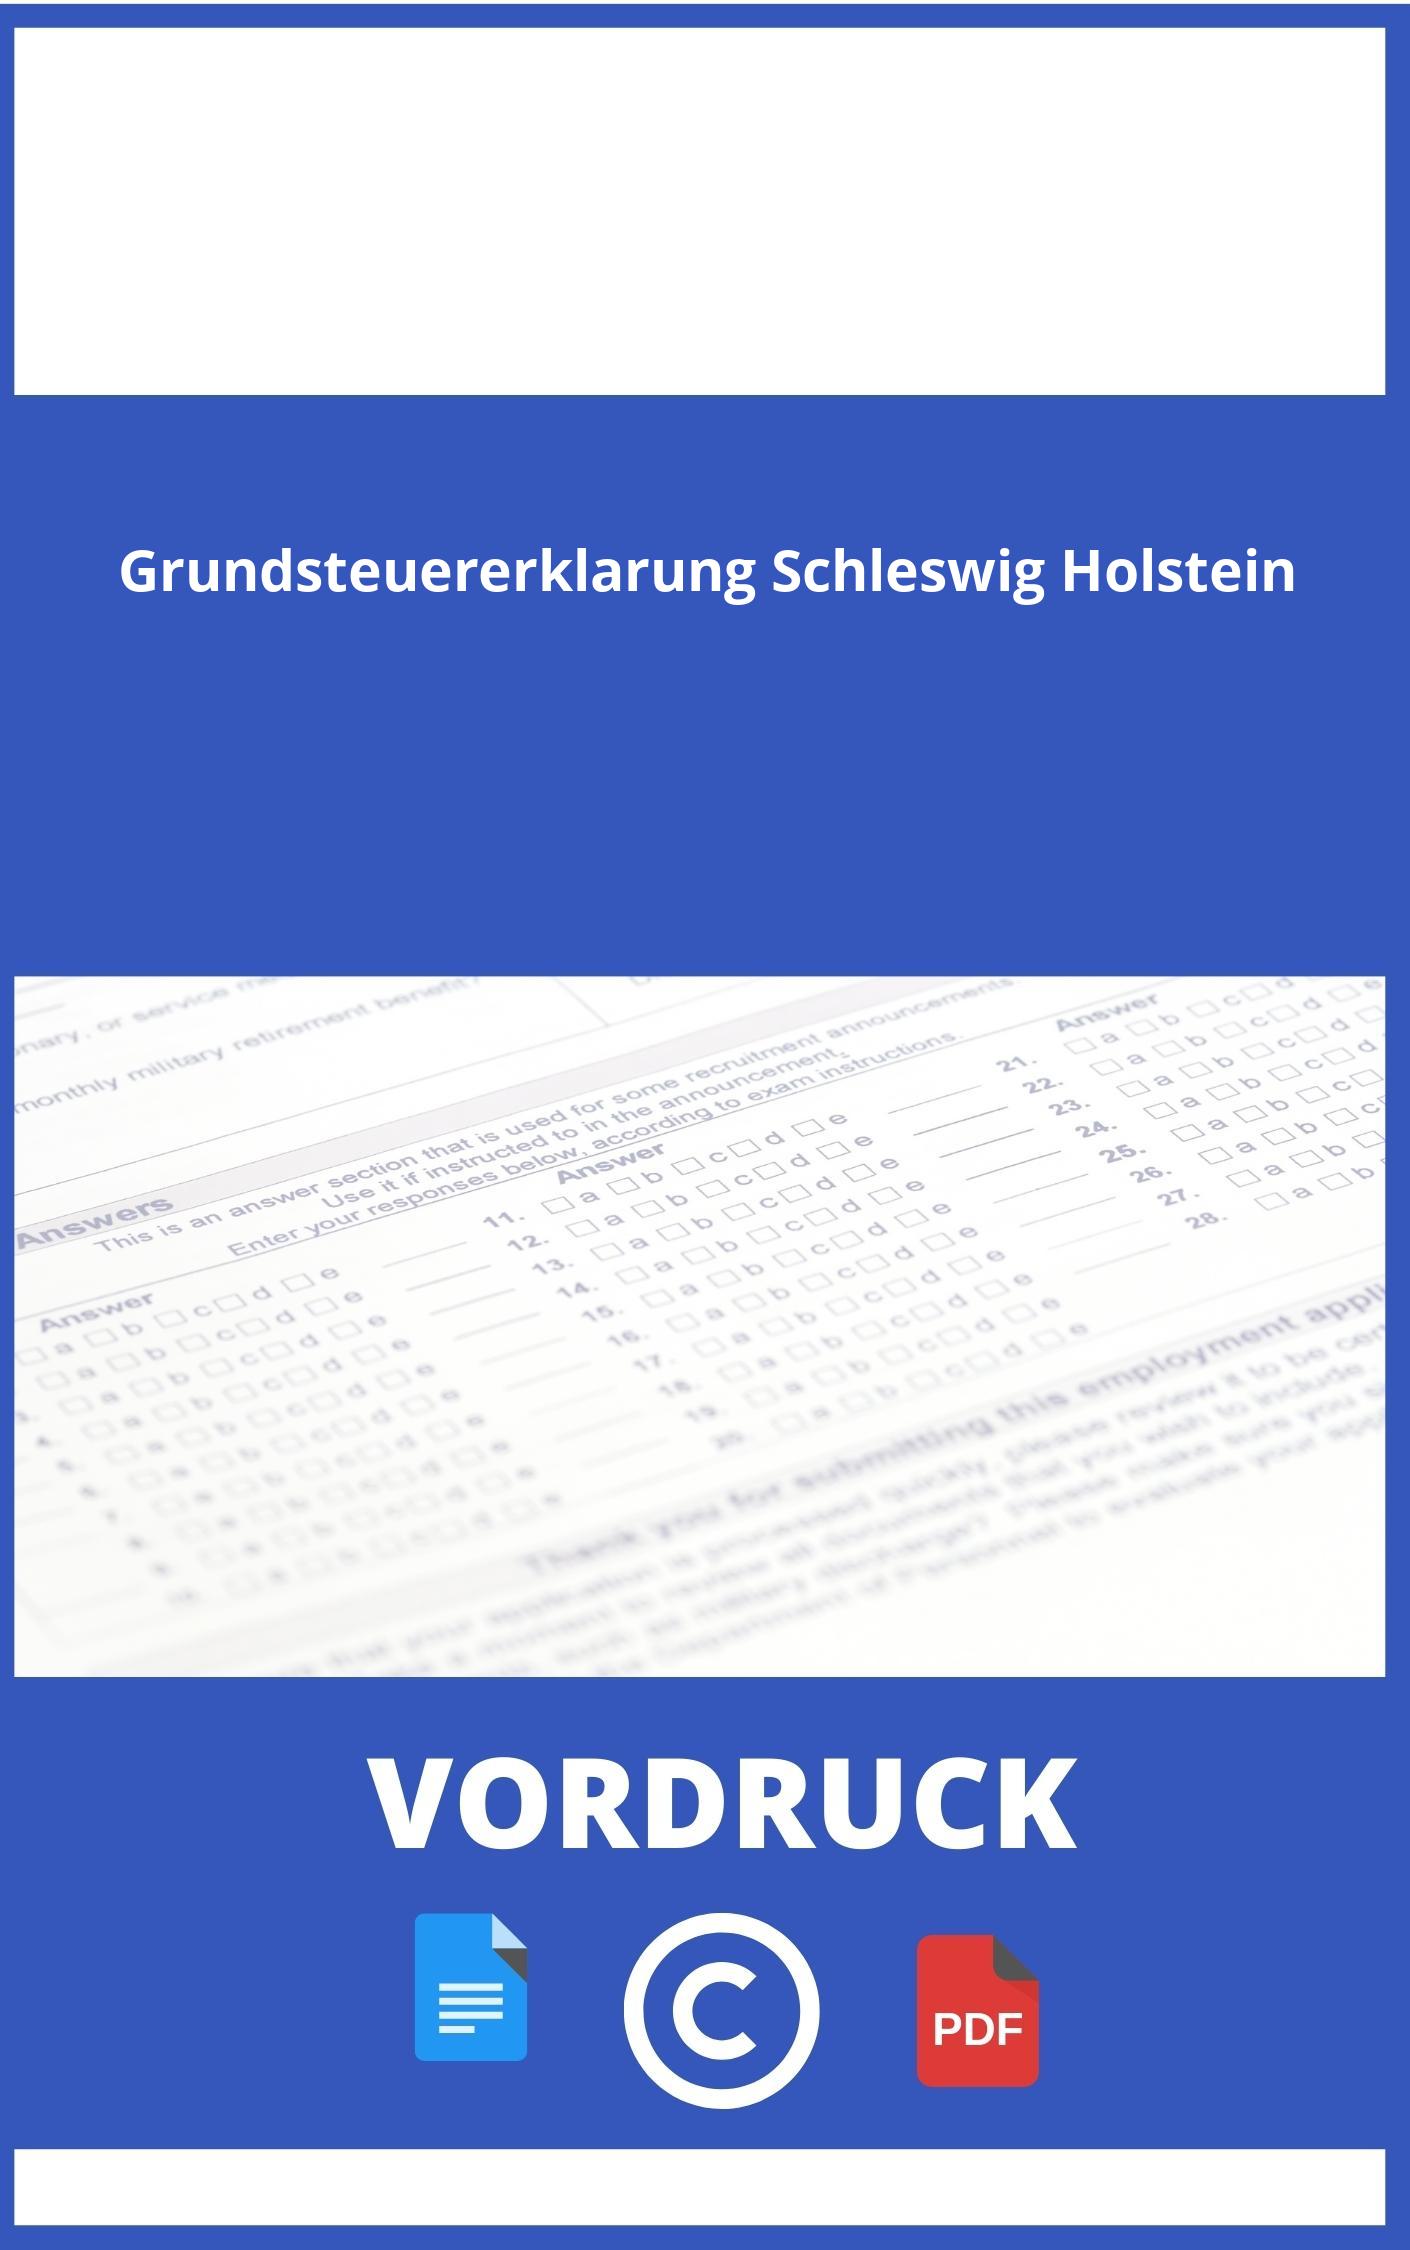 Vordruck Grundsteuererklärung Schleswig Holstein